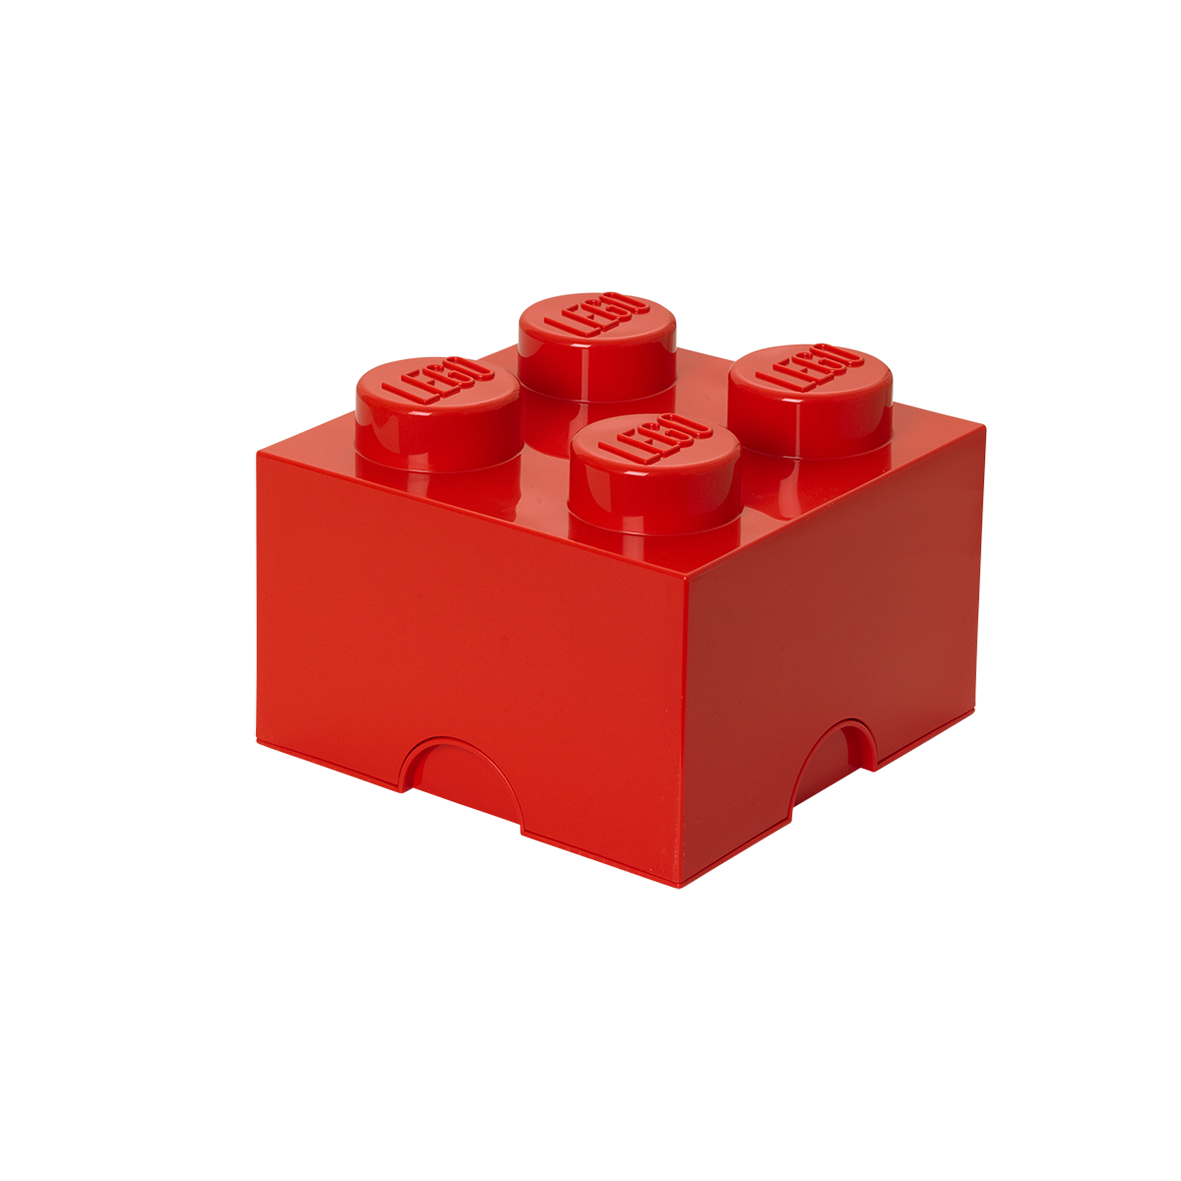 LEGO® ΚΟΥΤΙ ΑΠΟΘΗΚΕΥΣΗΣ ΤΕΤΡΑΓΩΝΟ ΜΕΓΑΛΟ ΚΟΚΚΙΝΟ - 40031730